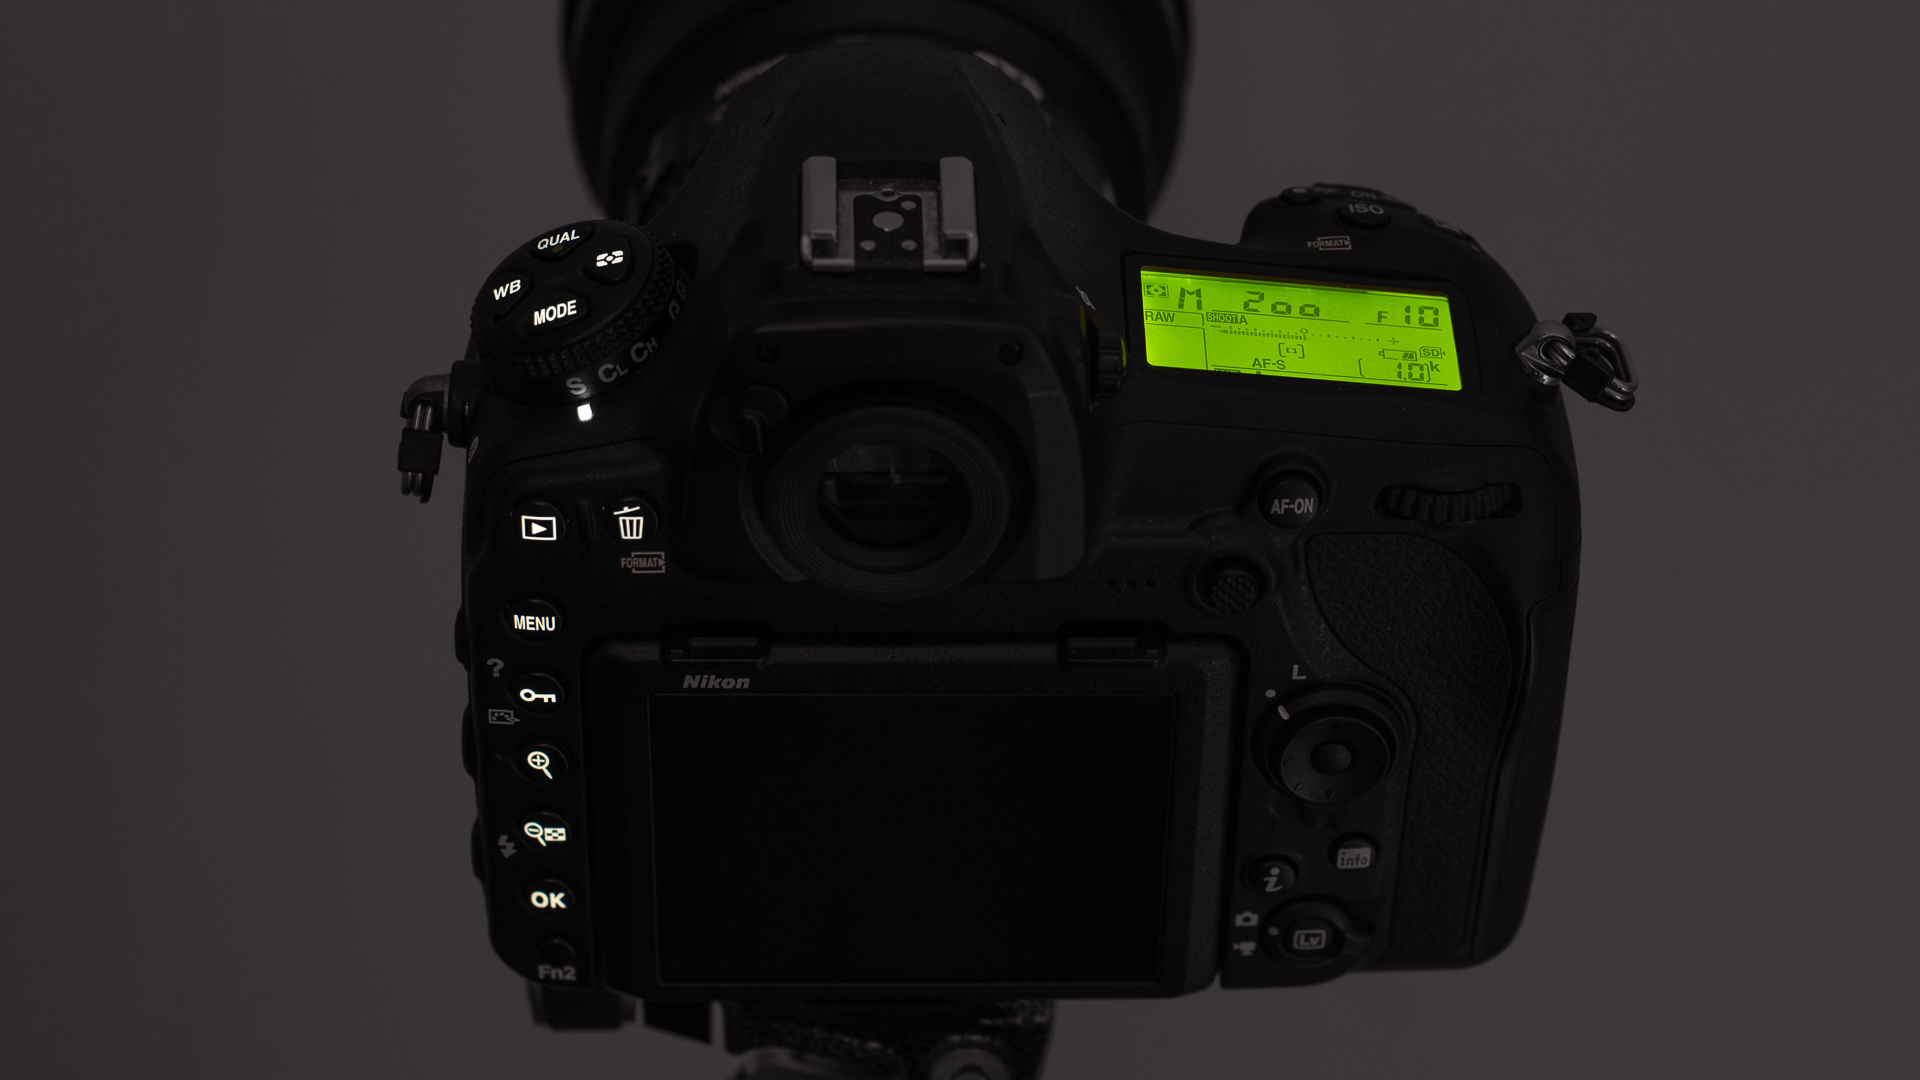 Los botones iluminados de una Nikon D850 en un ambiente oscuro